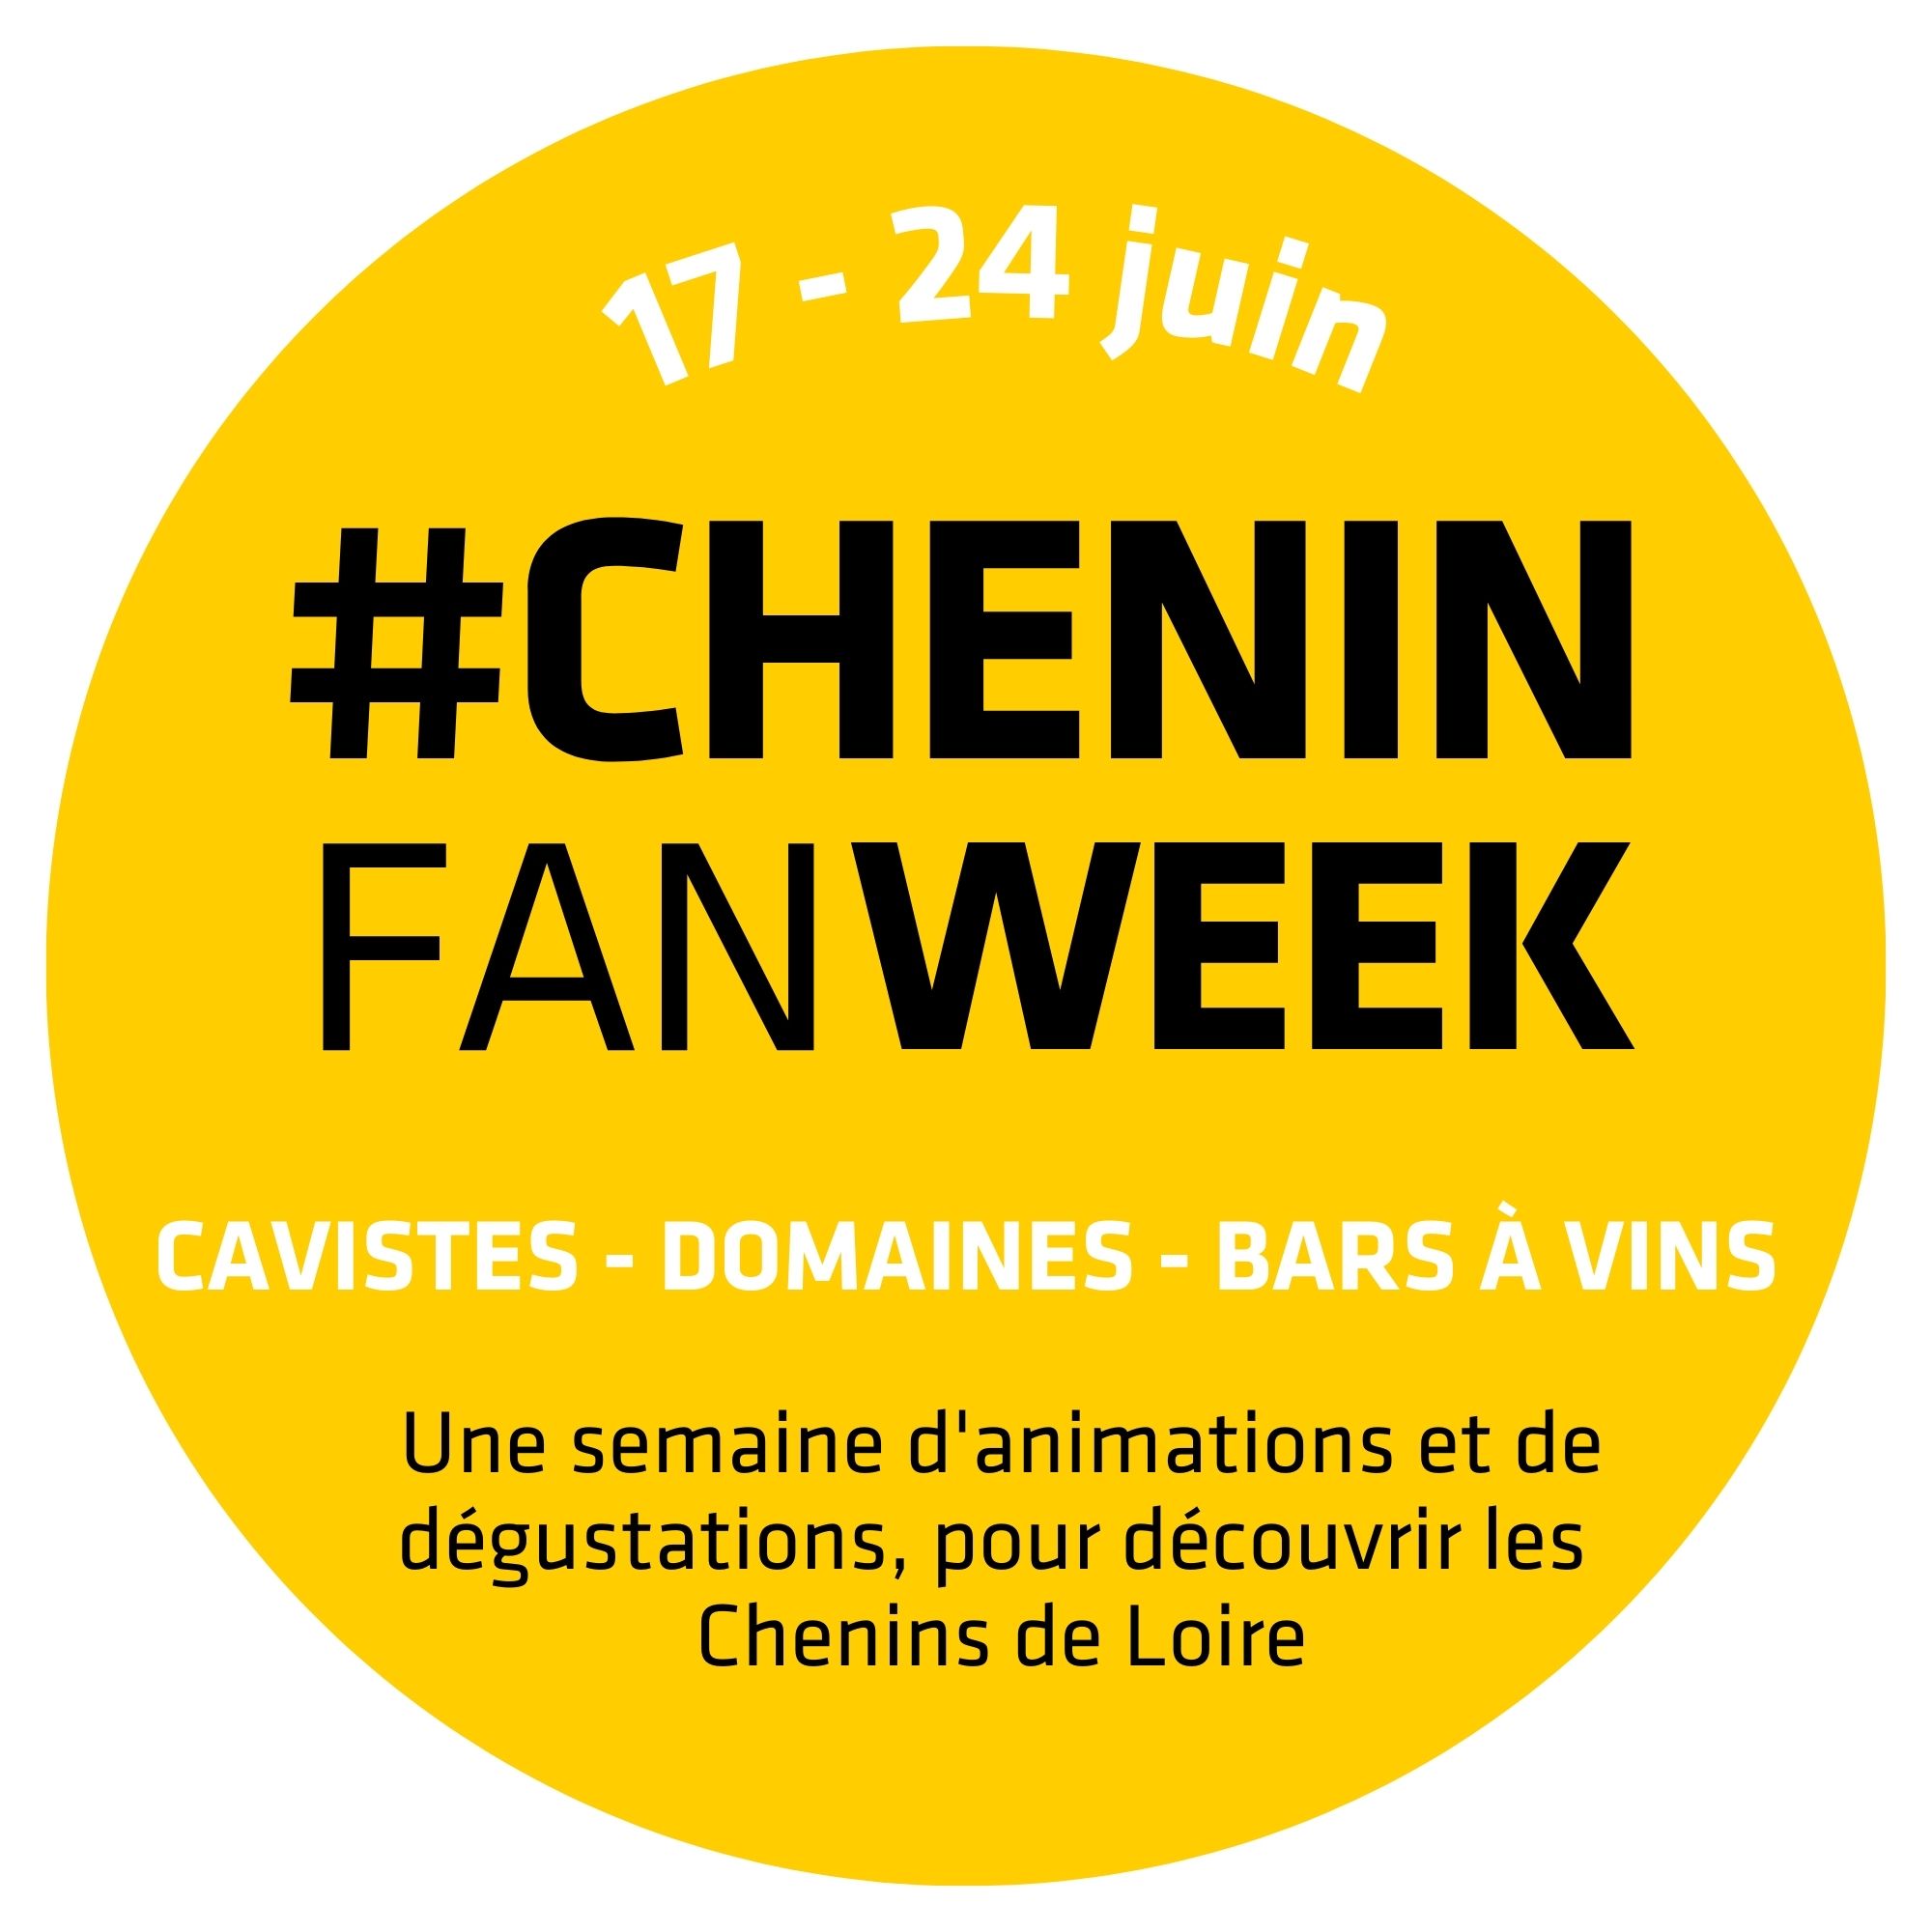 chenin fan week